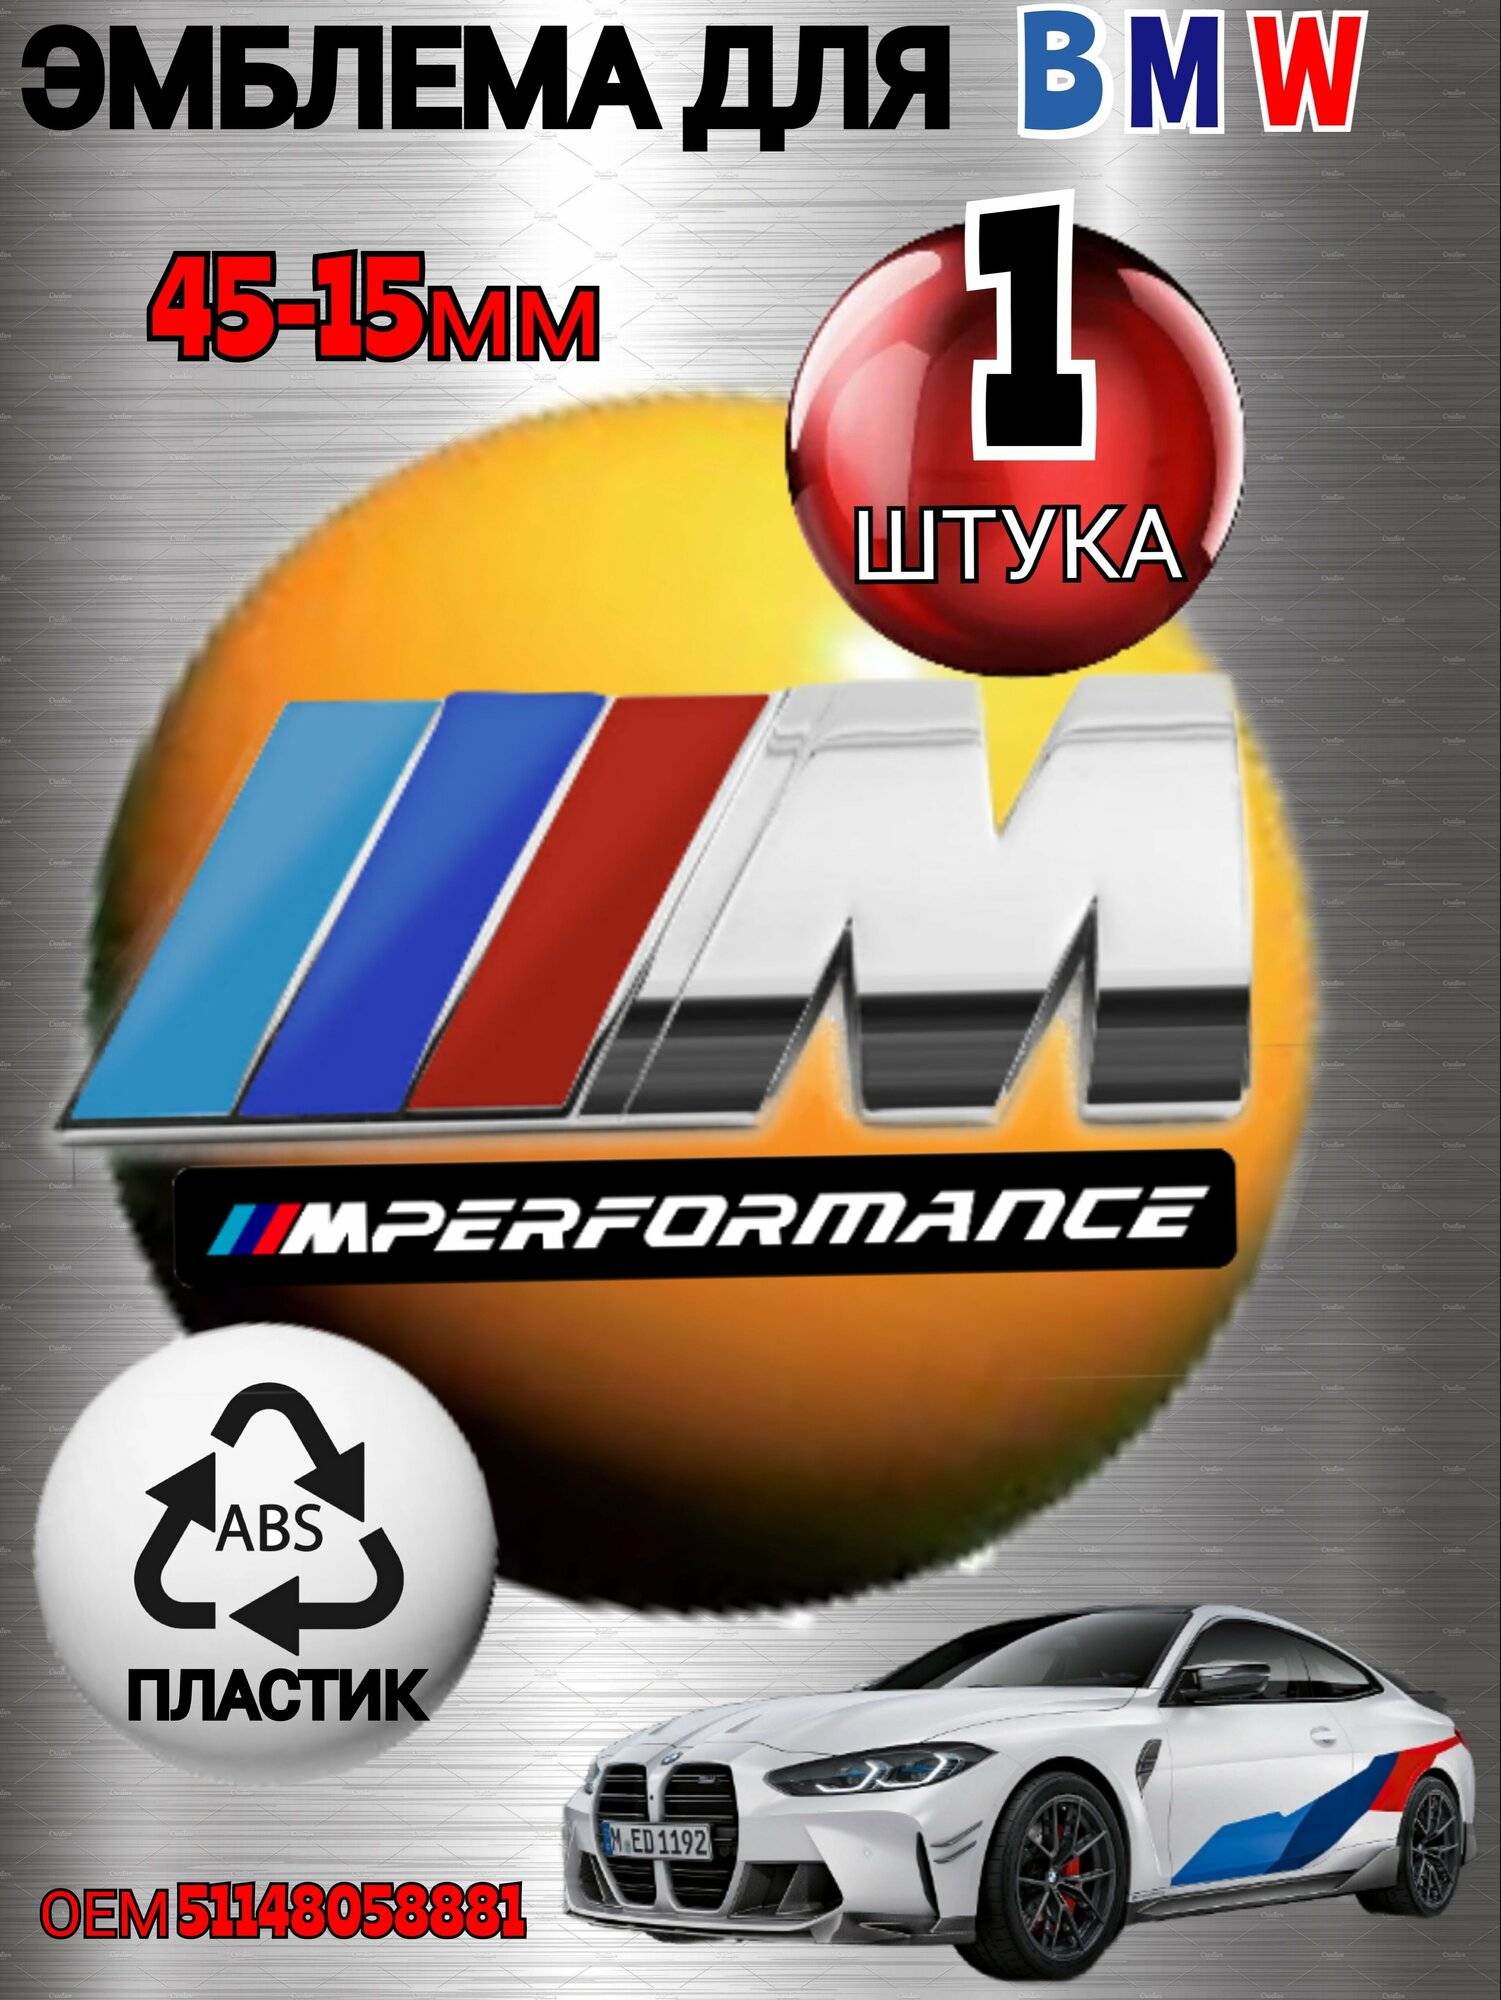 Шильдик (эмблема, надпись) для автомобия BMW БМВ на крыло M-performance цвет хром 45-15mm из металла